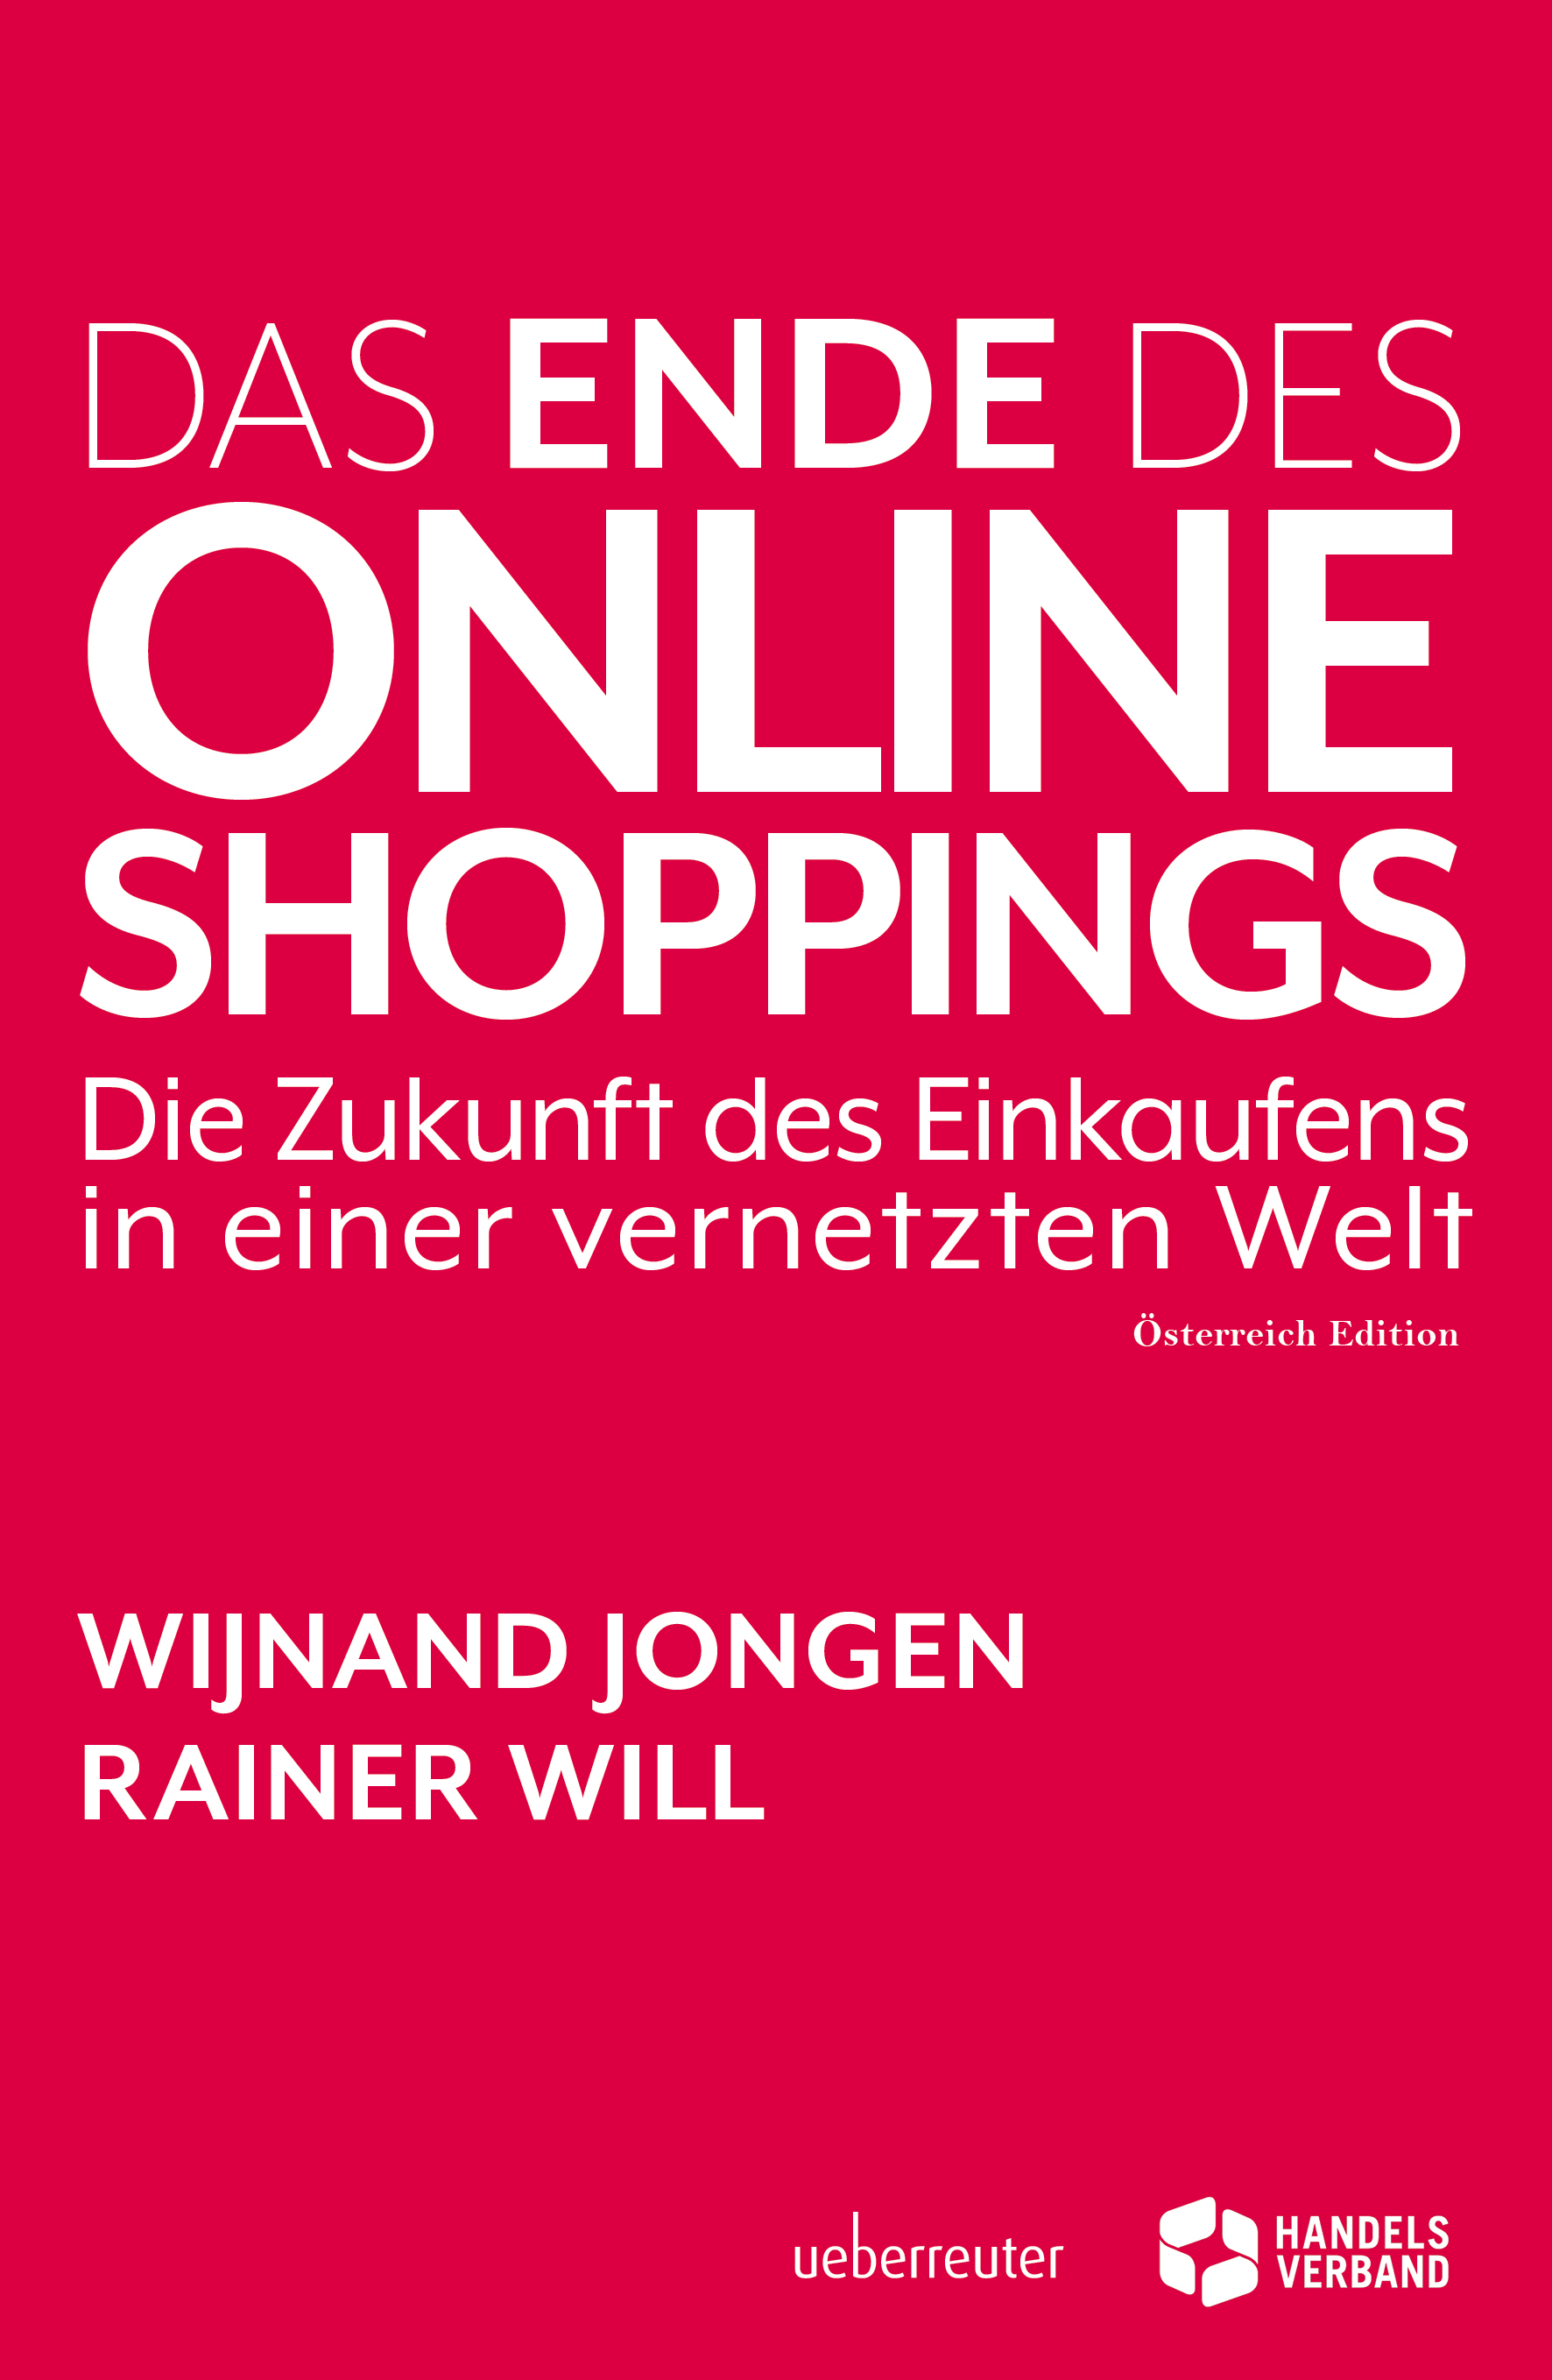 Das Ende des Online Shoppings Die Zukunft des Einkaufens in einer vernetzten Welt PDF